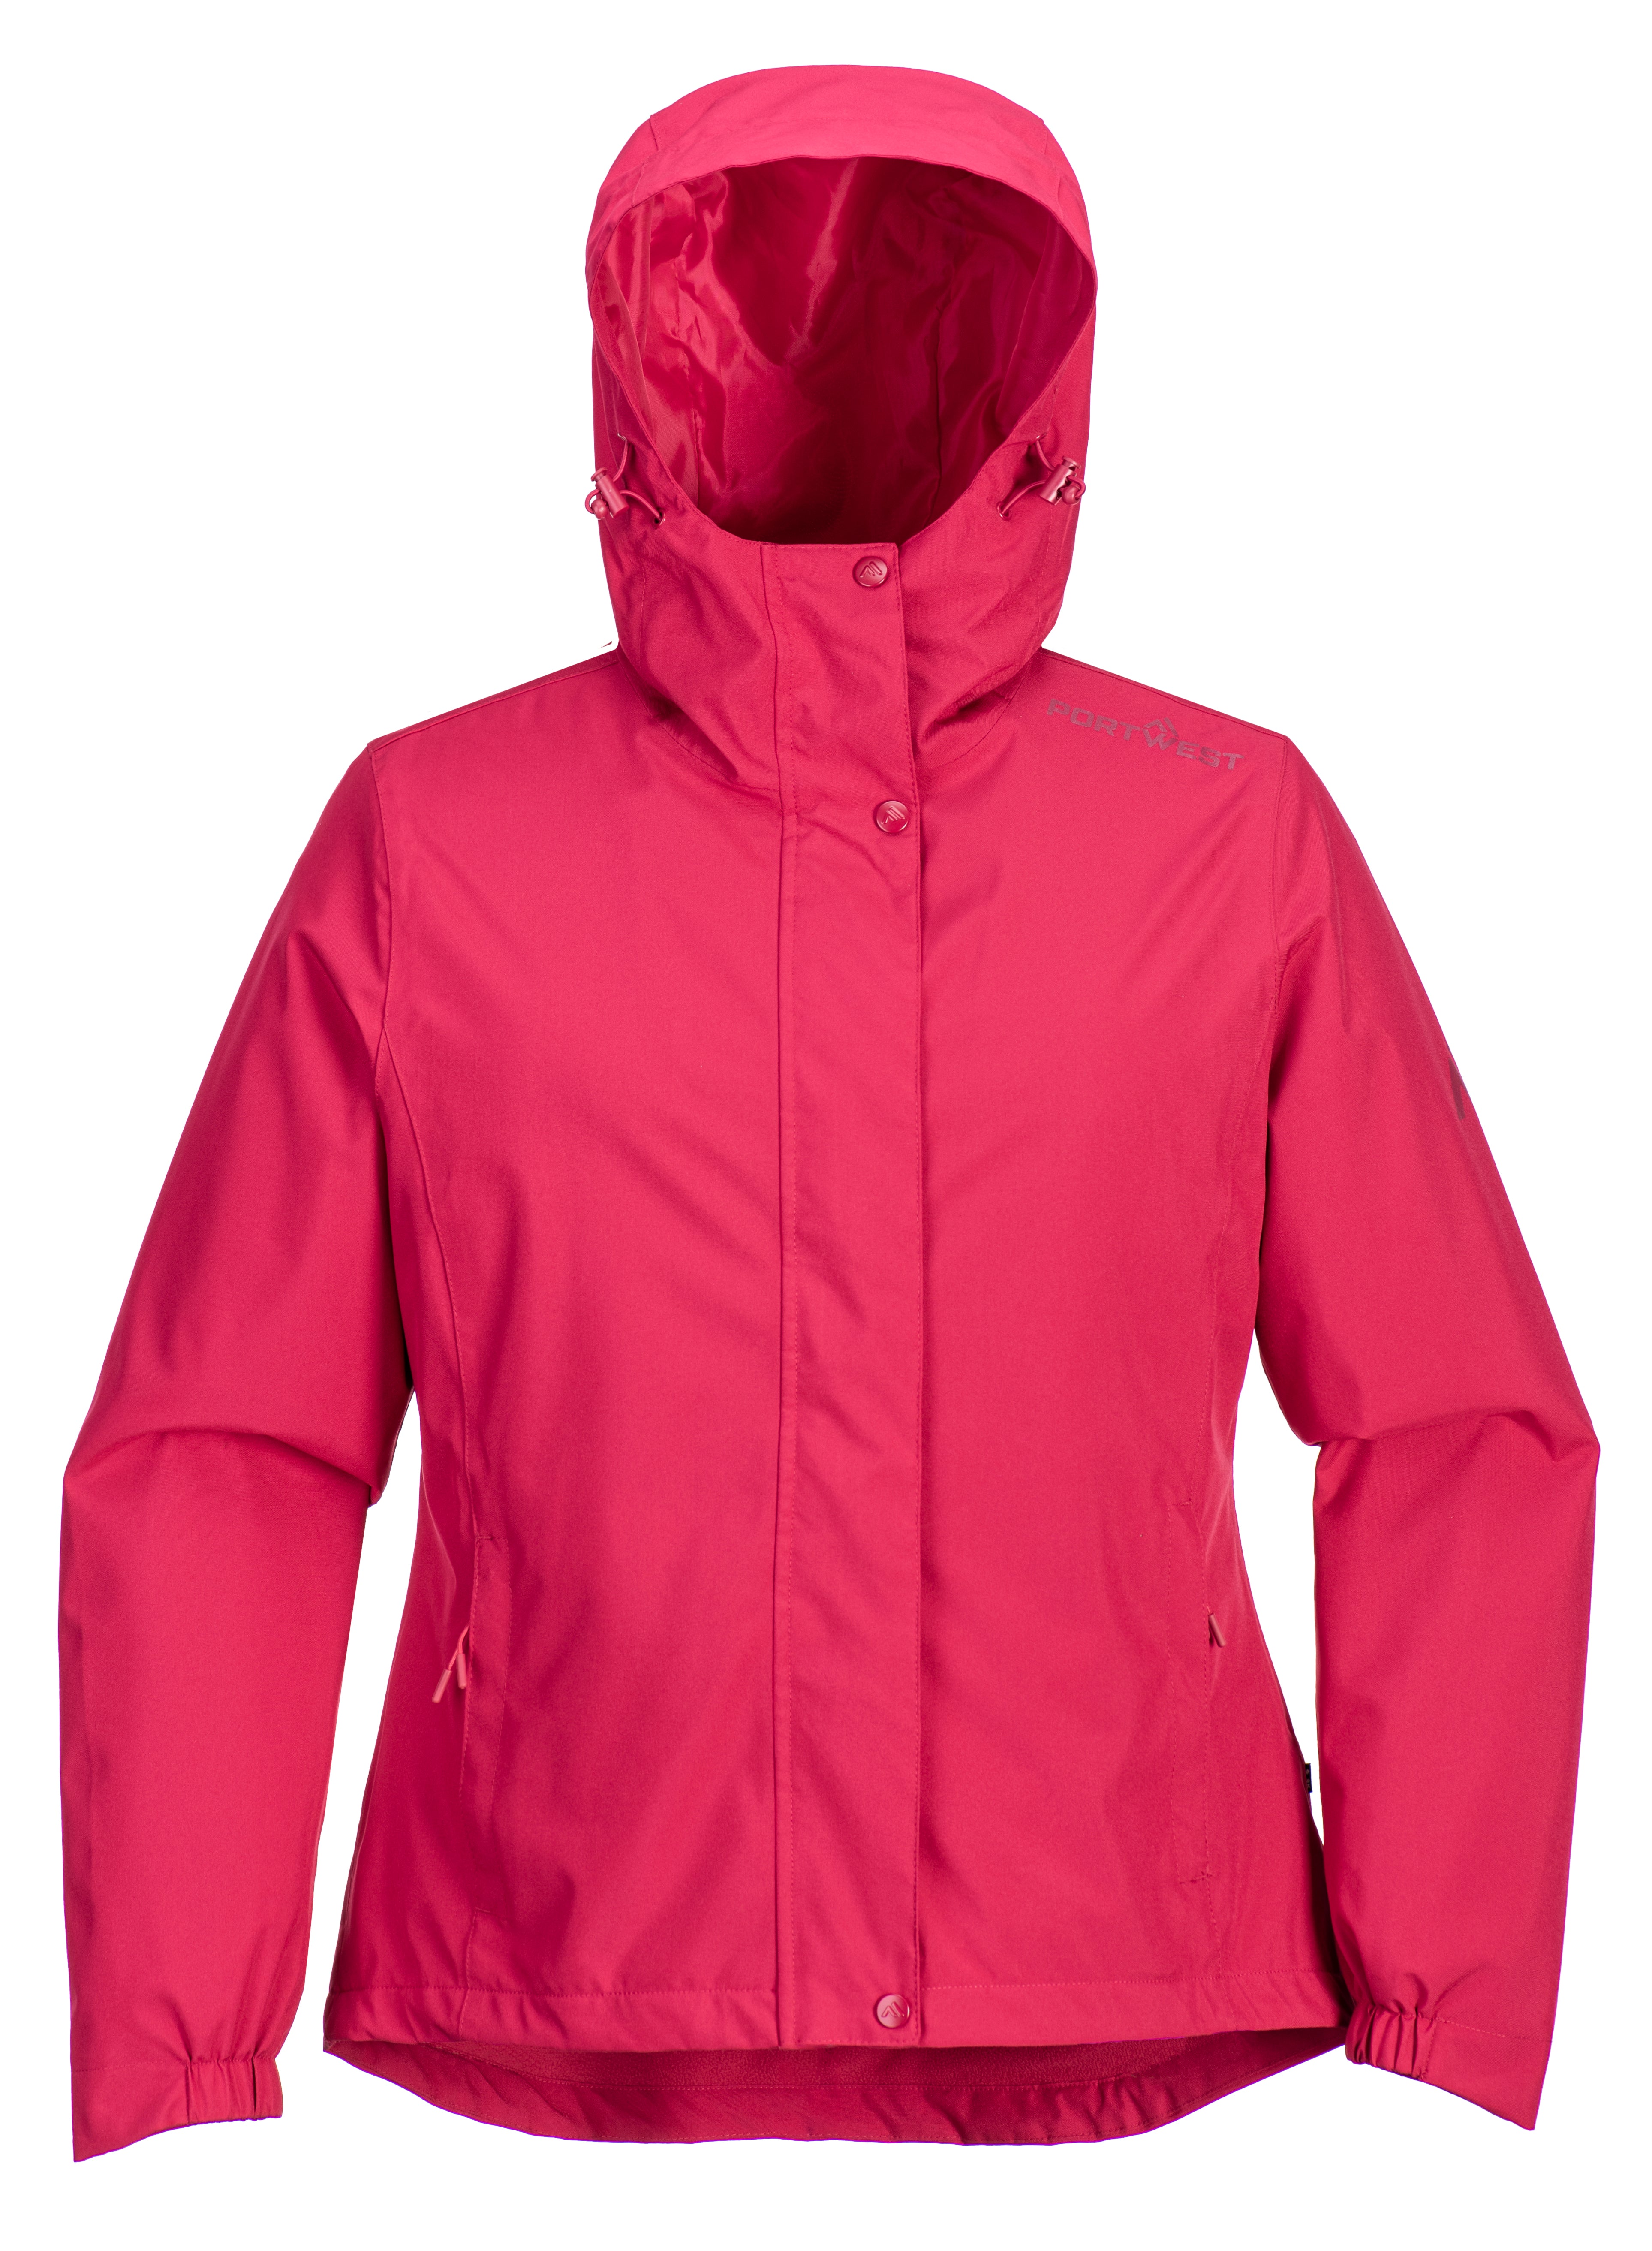 Portwest Women's Dunraven Rain Jacket | PORTWEST | Portwest - The Outdoor Shop